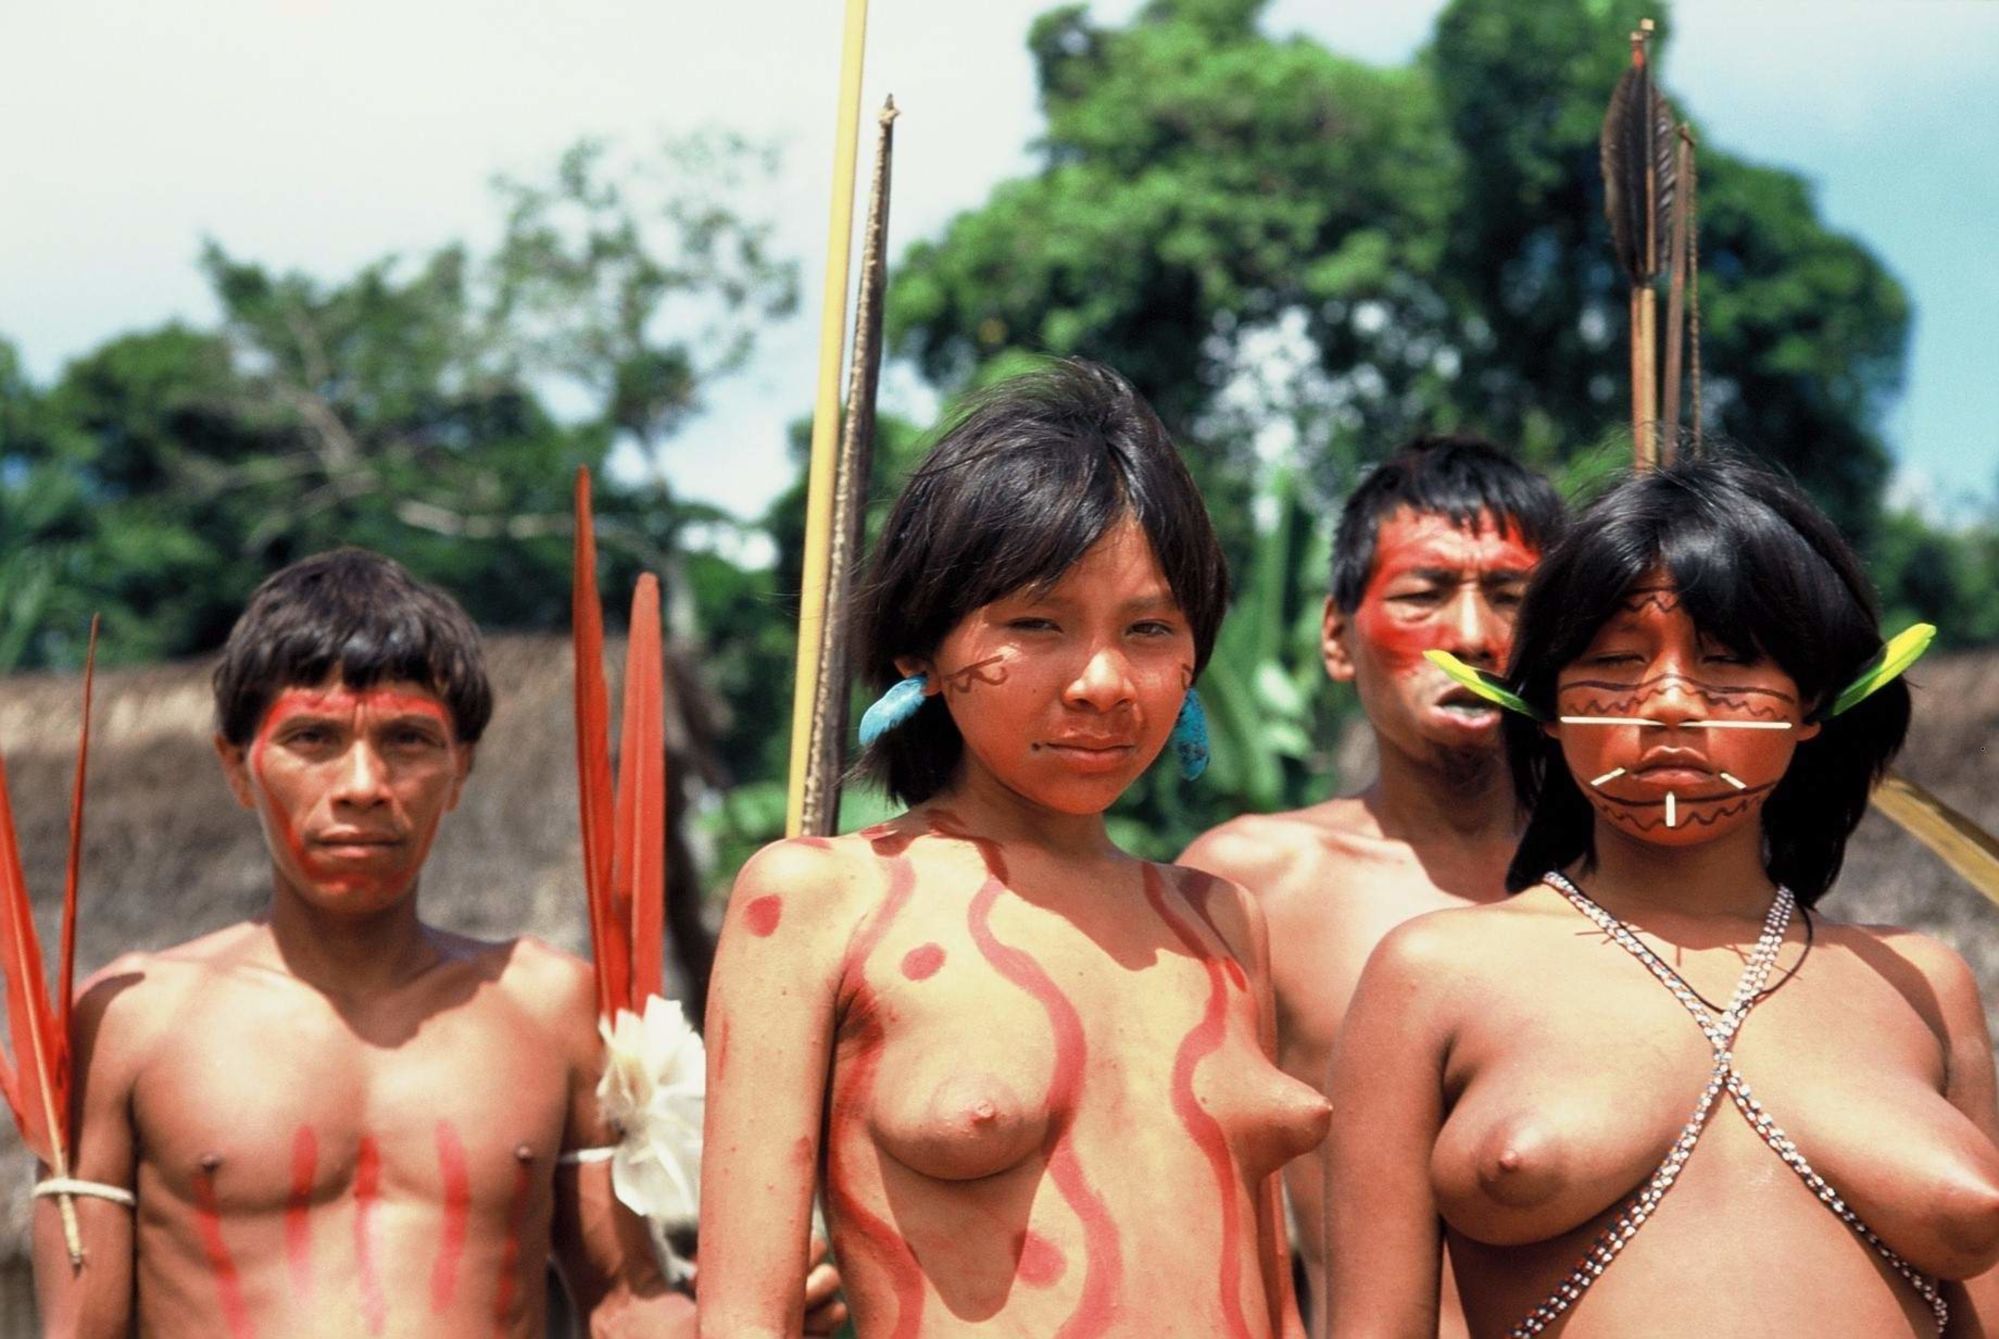 племена голых людей фото 77